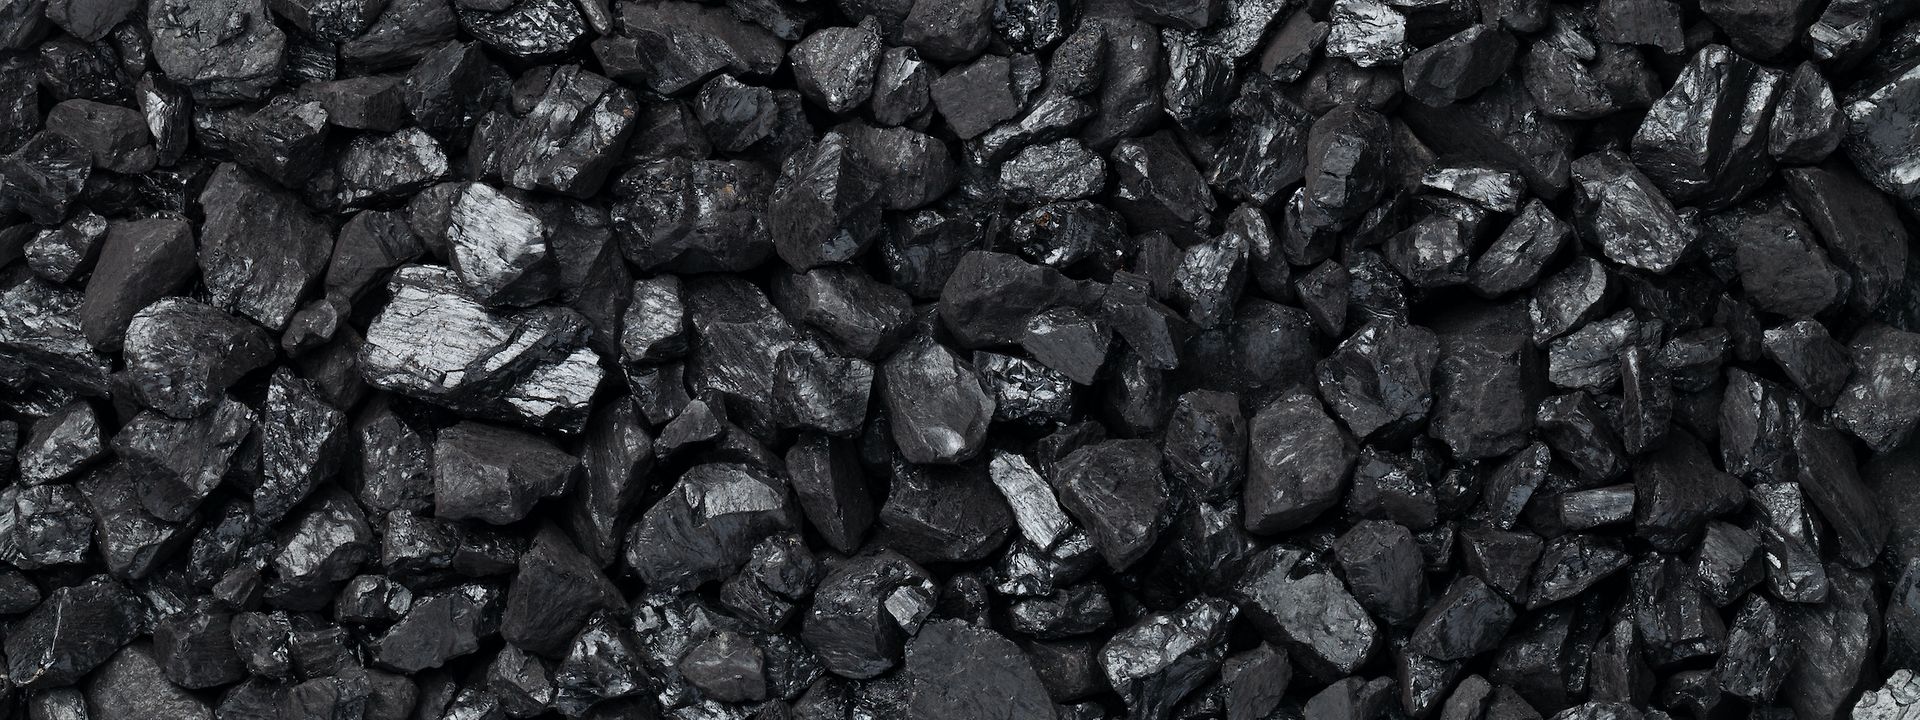 coal pieces